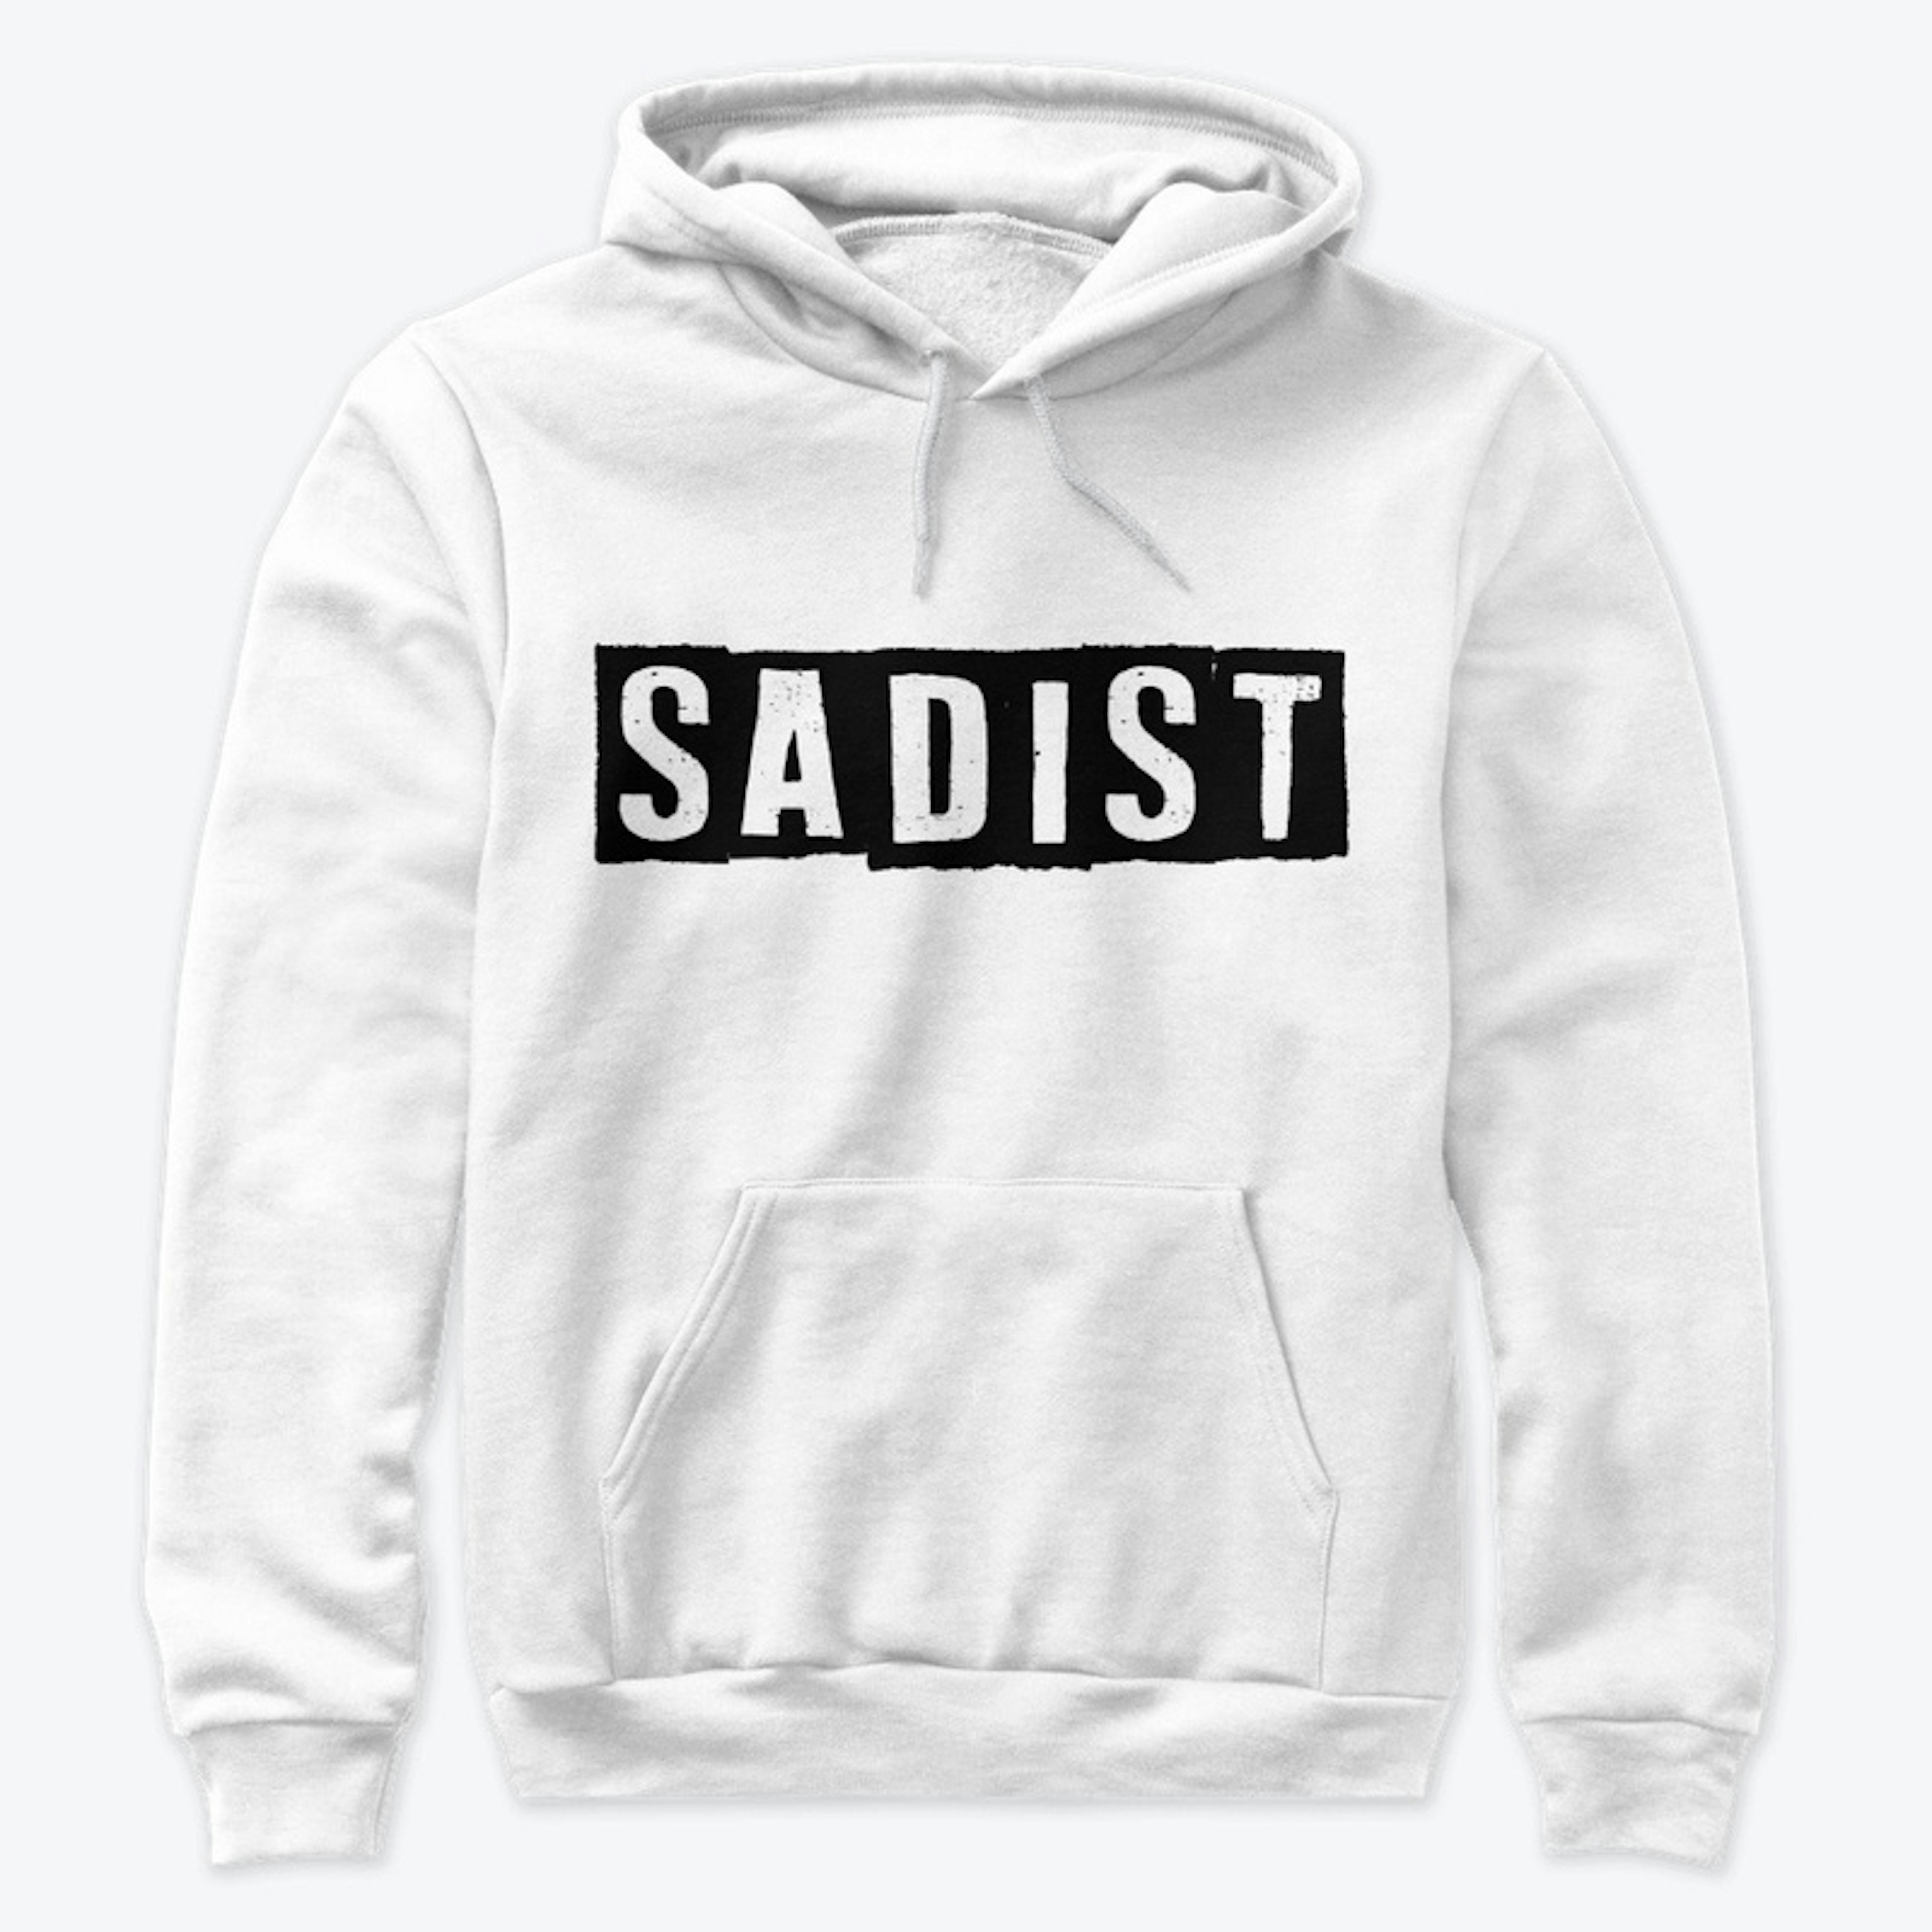 Sadist (white)